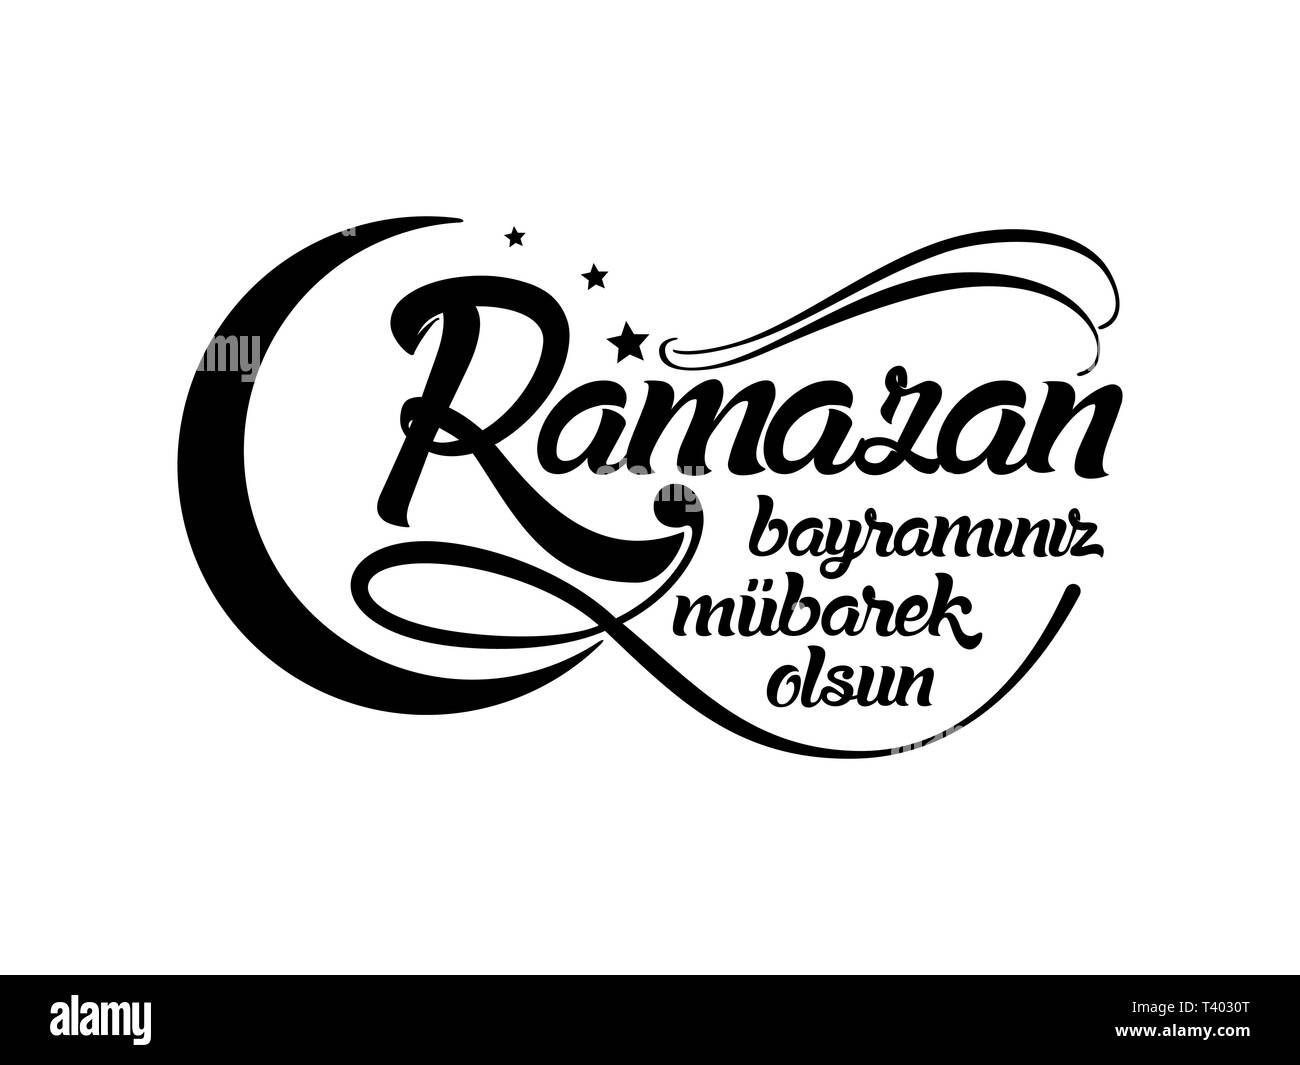 Ramazan bayraminiz mubarek olsun. Translation from turkish: Happy Ramadan. Stock Vector